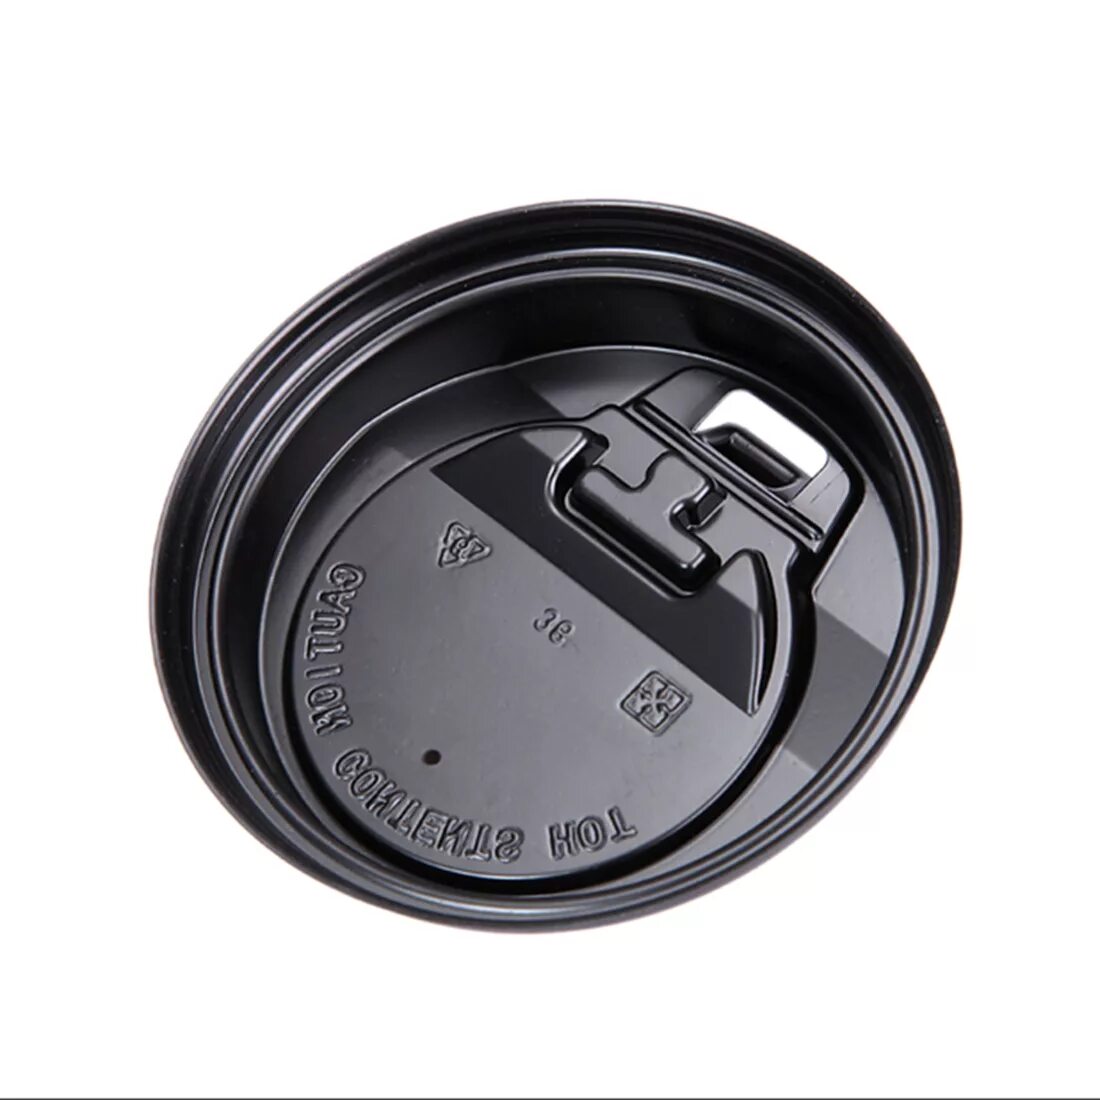 Купить крышку для кофе. Крышка для кофе. Крышка для стакана кофе с клапаном. Крышка для стаканчика черная. Черный стакан с крышкой.